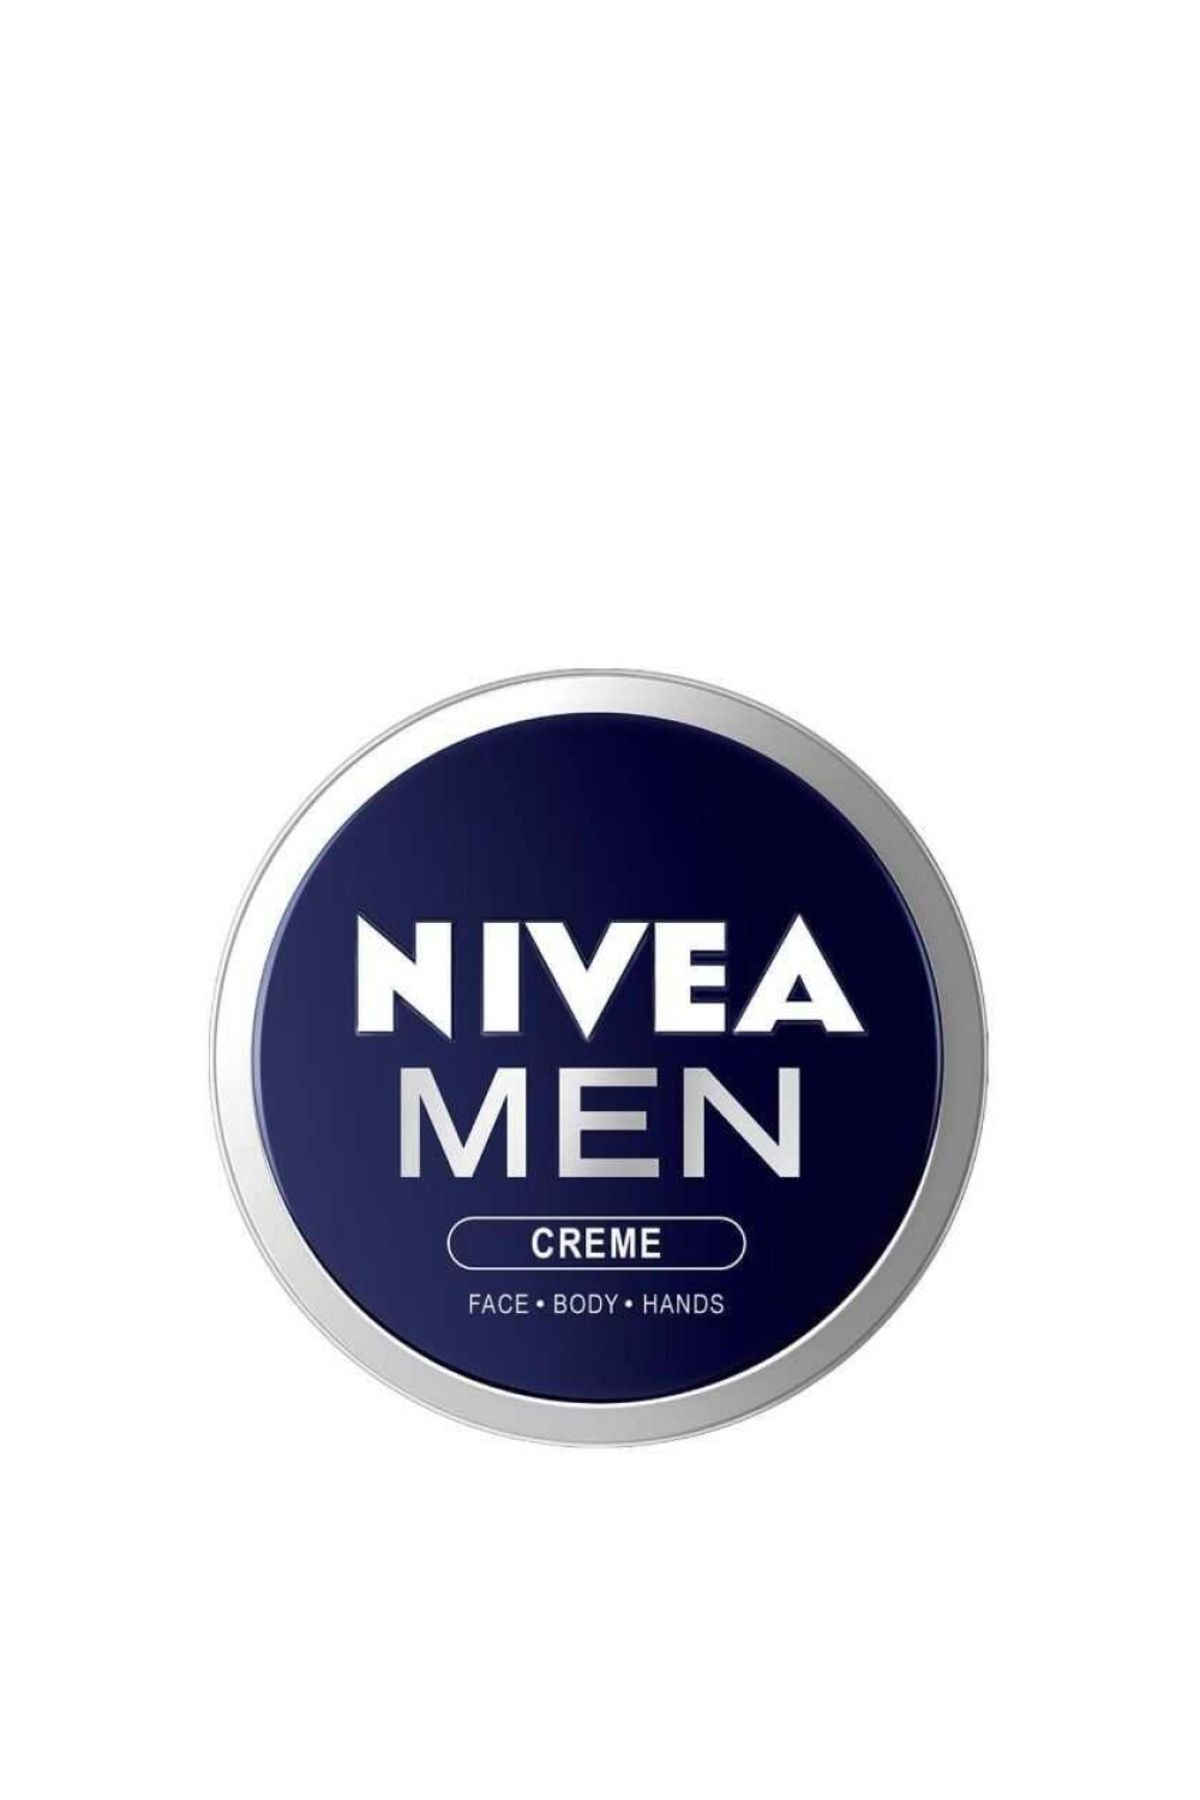 NIVEA Men Krem 30 ml